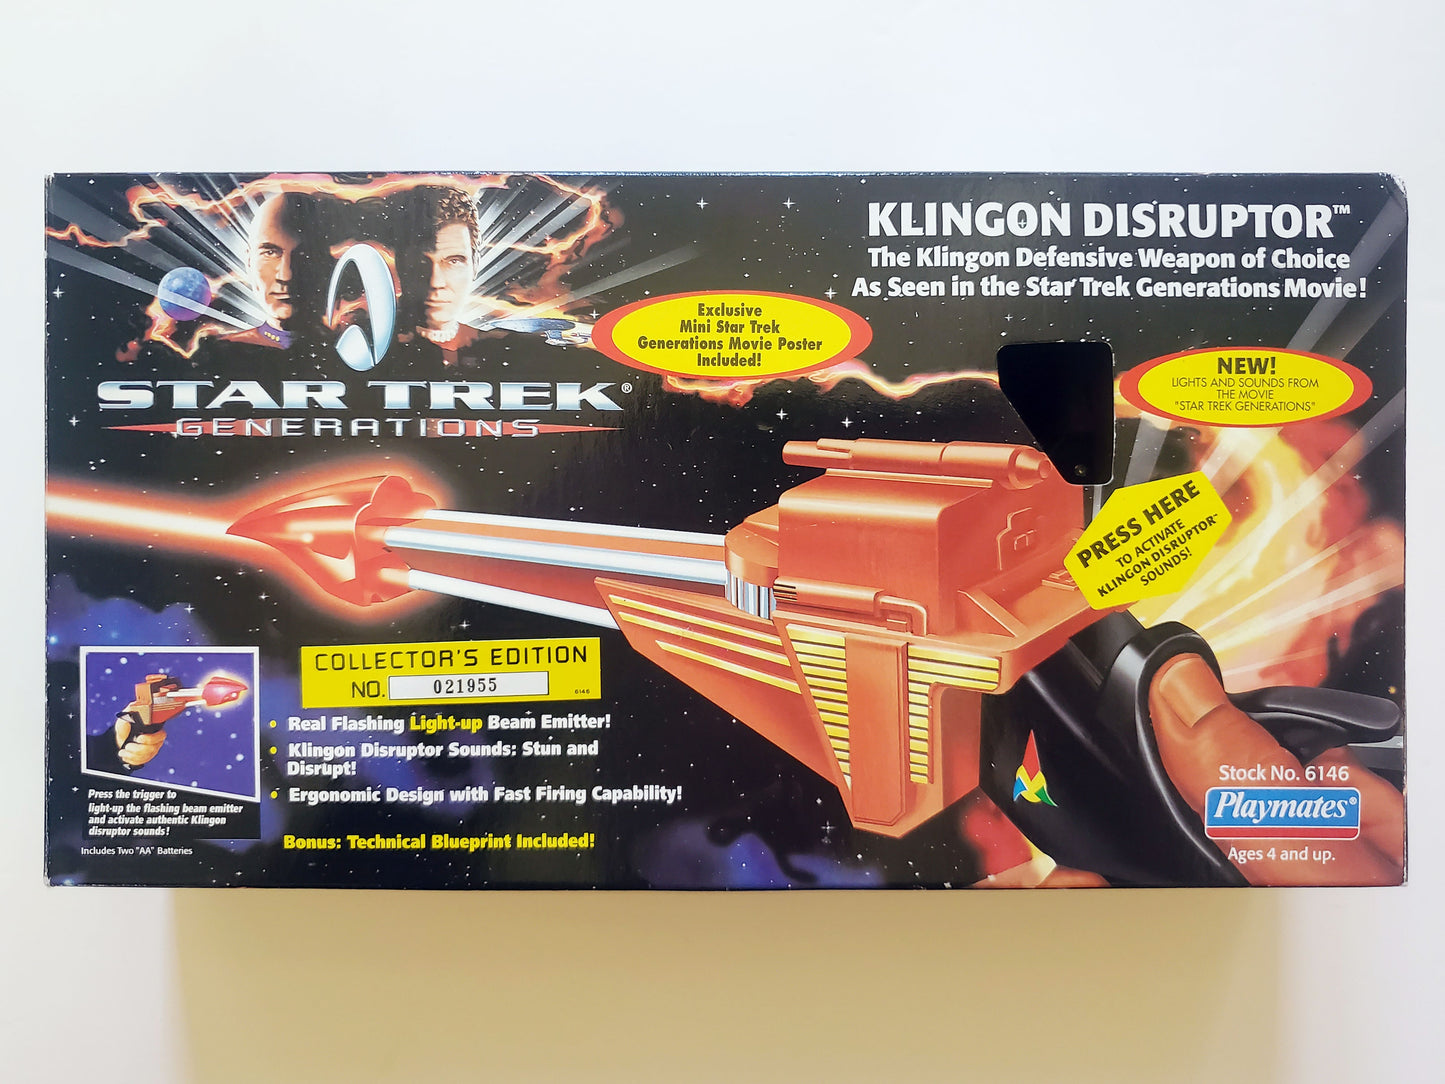 Klingon Disruptor from Star Trek: Generations